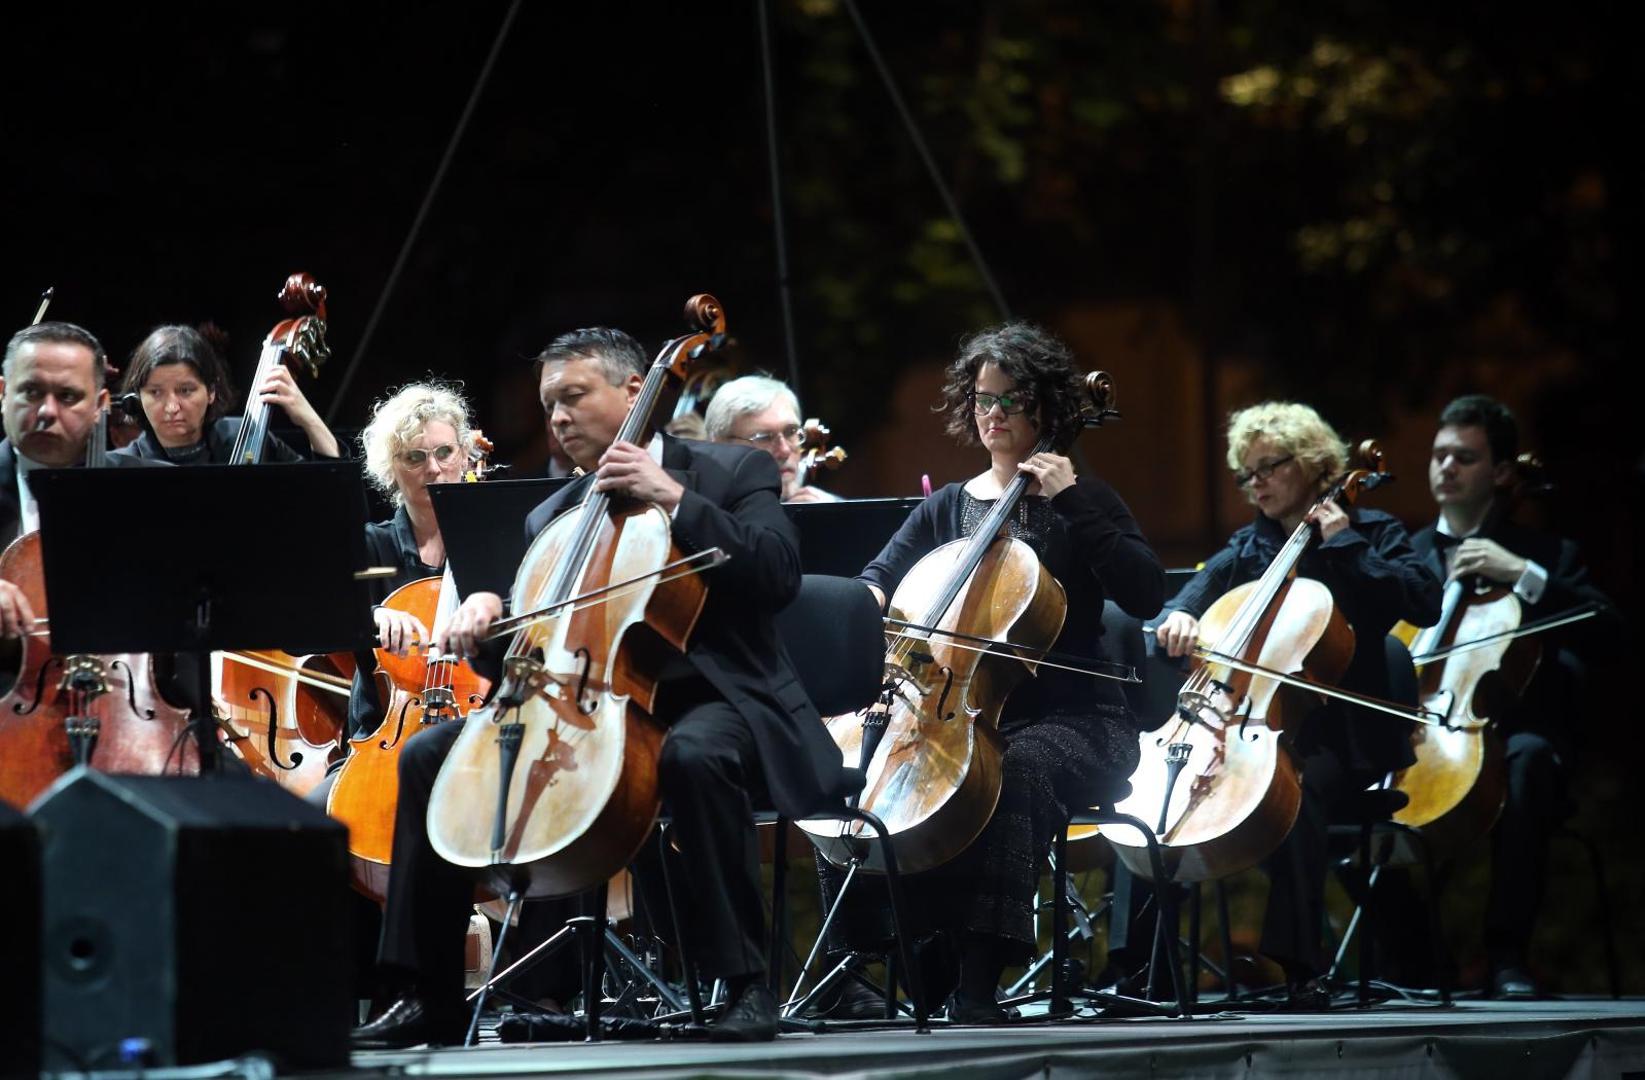 Održana je opera pod zvijezdama na Trgu kralja Tomislava u sklopu 3. Zagreb Classic festivala. 